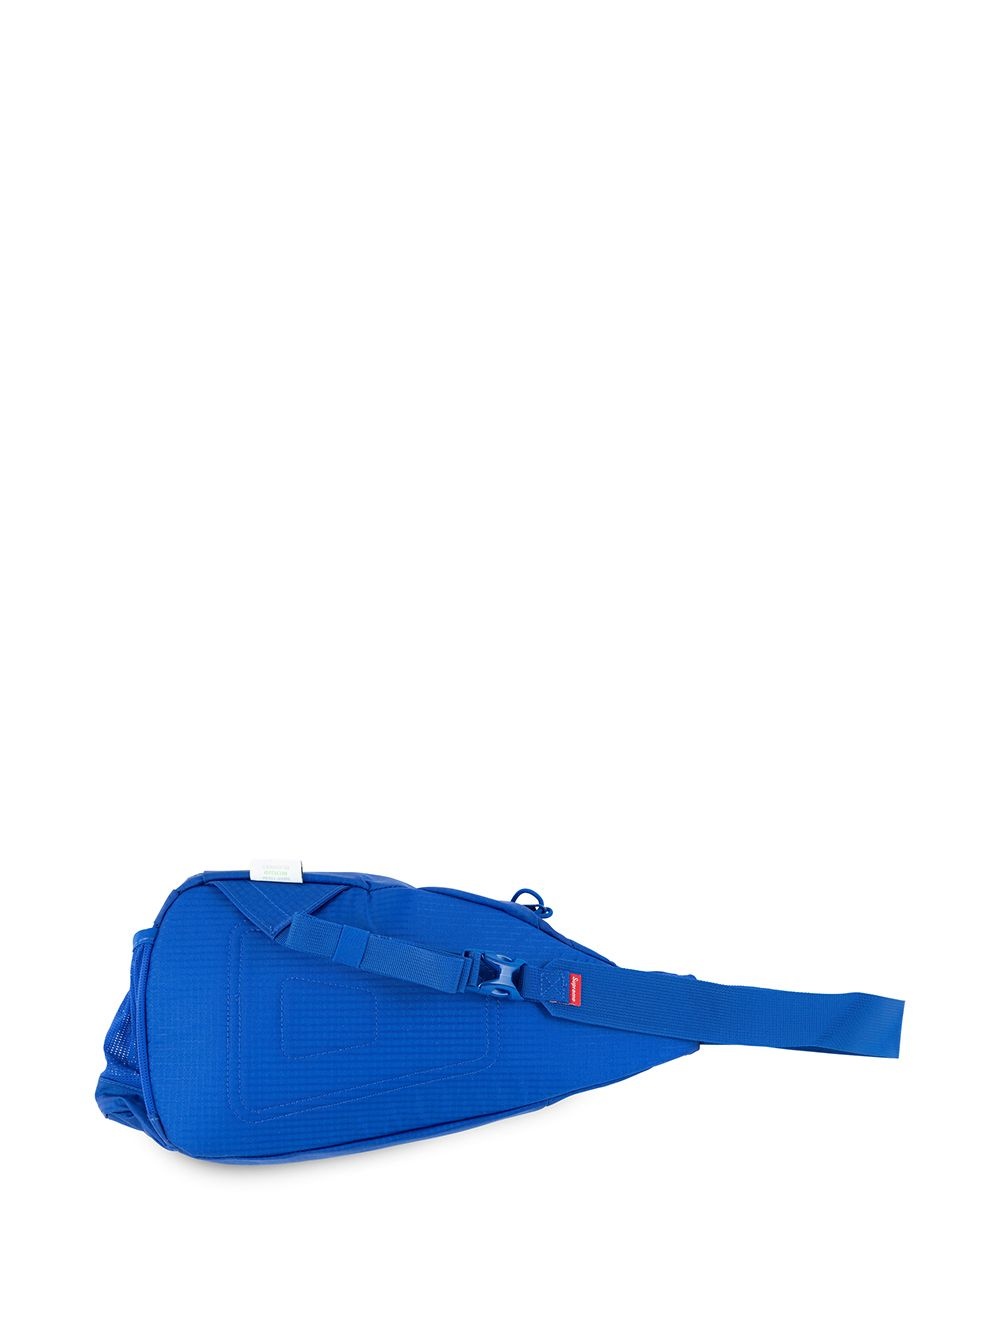 sling shoulder bag - 2